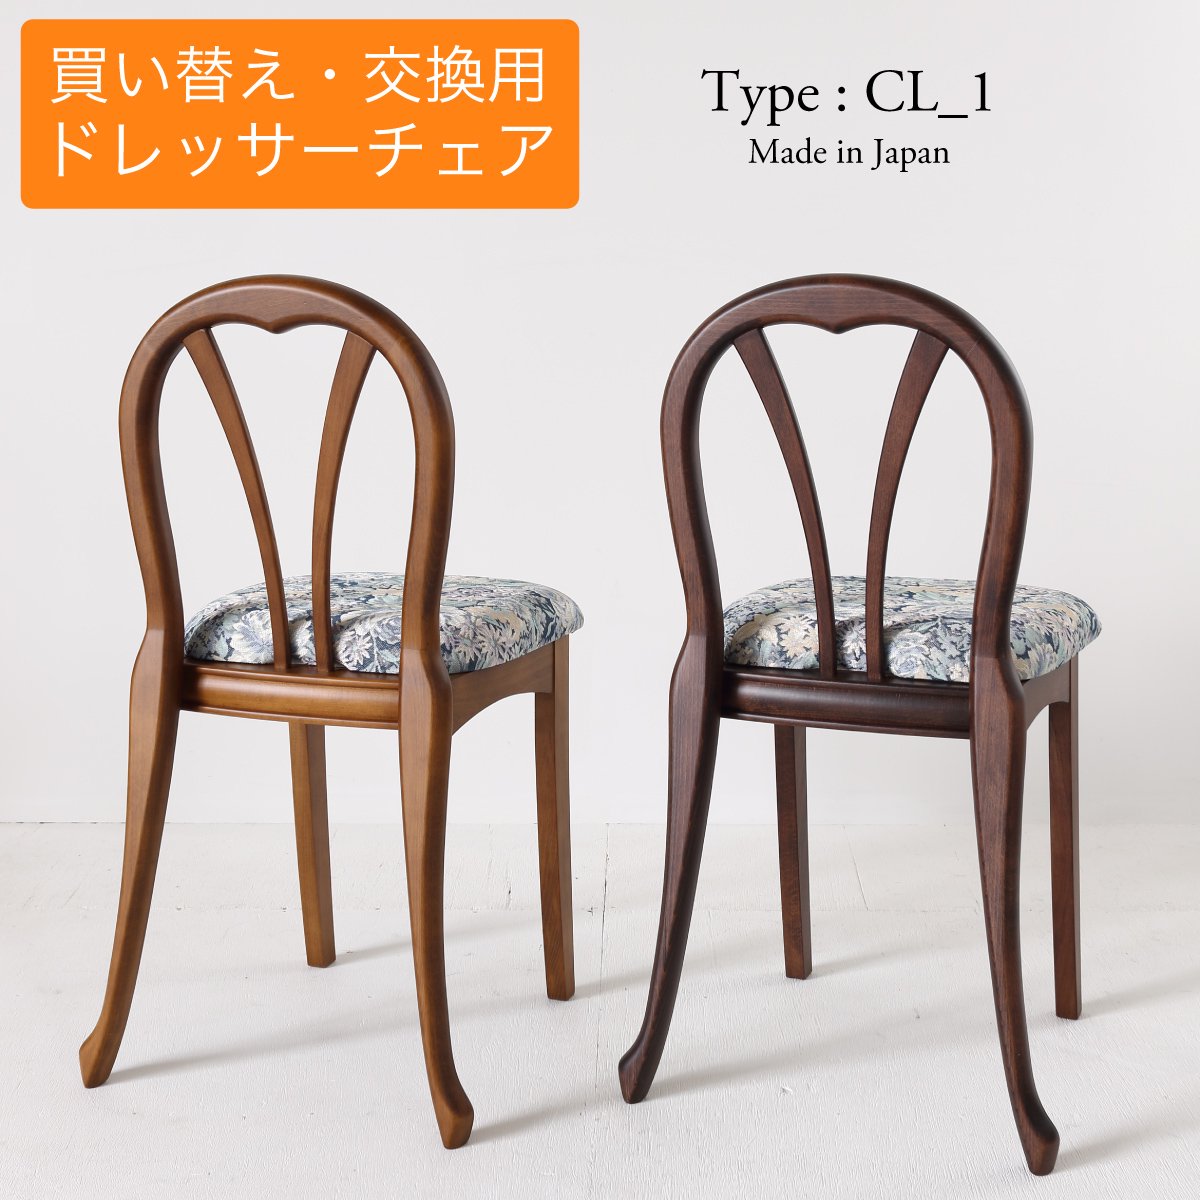 ドレッサー用チェア買い替え交換用椅子 クラシカルなデザインCL_1/国産